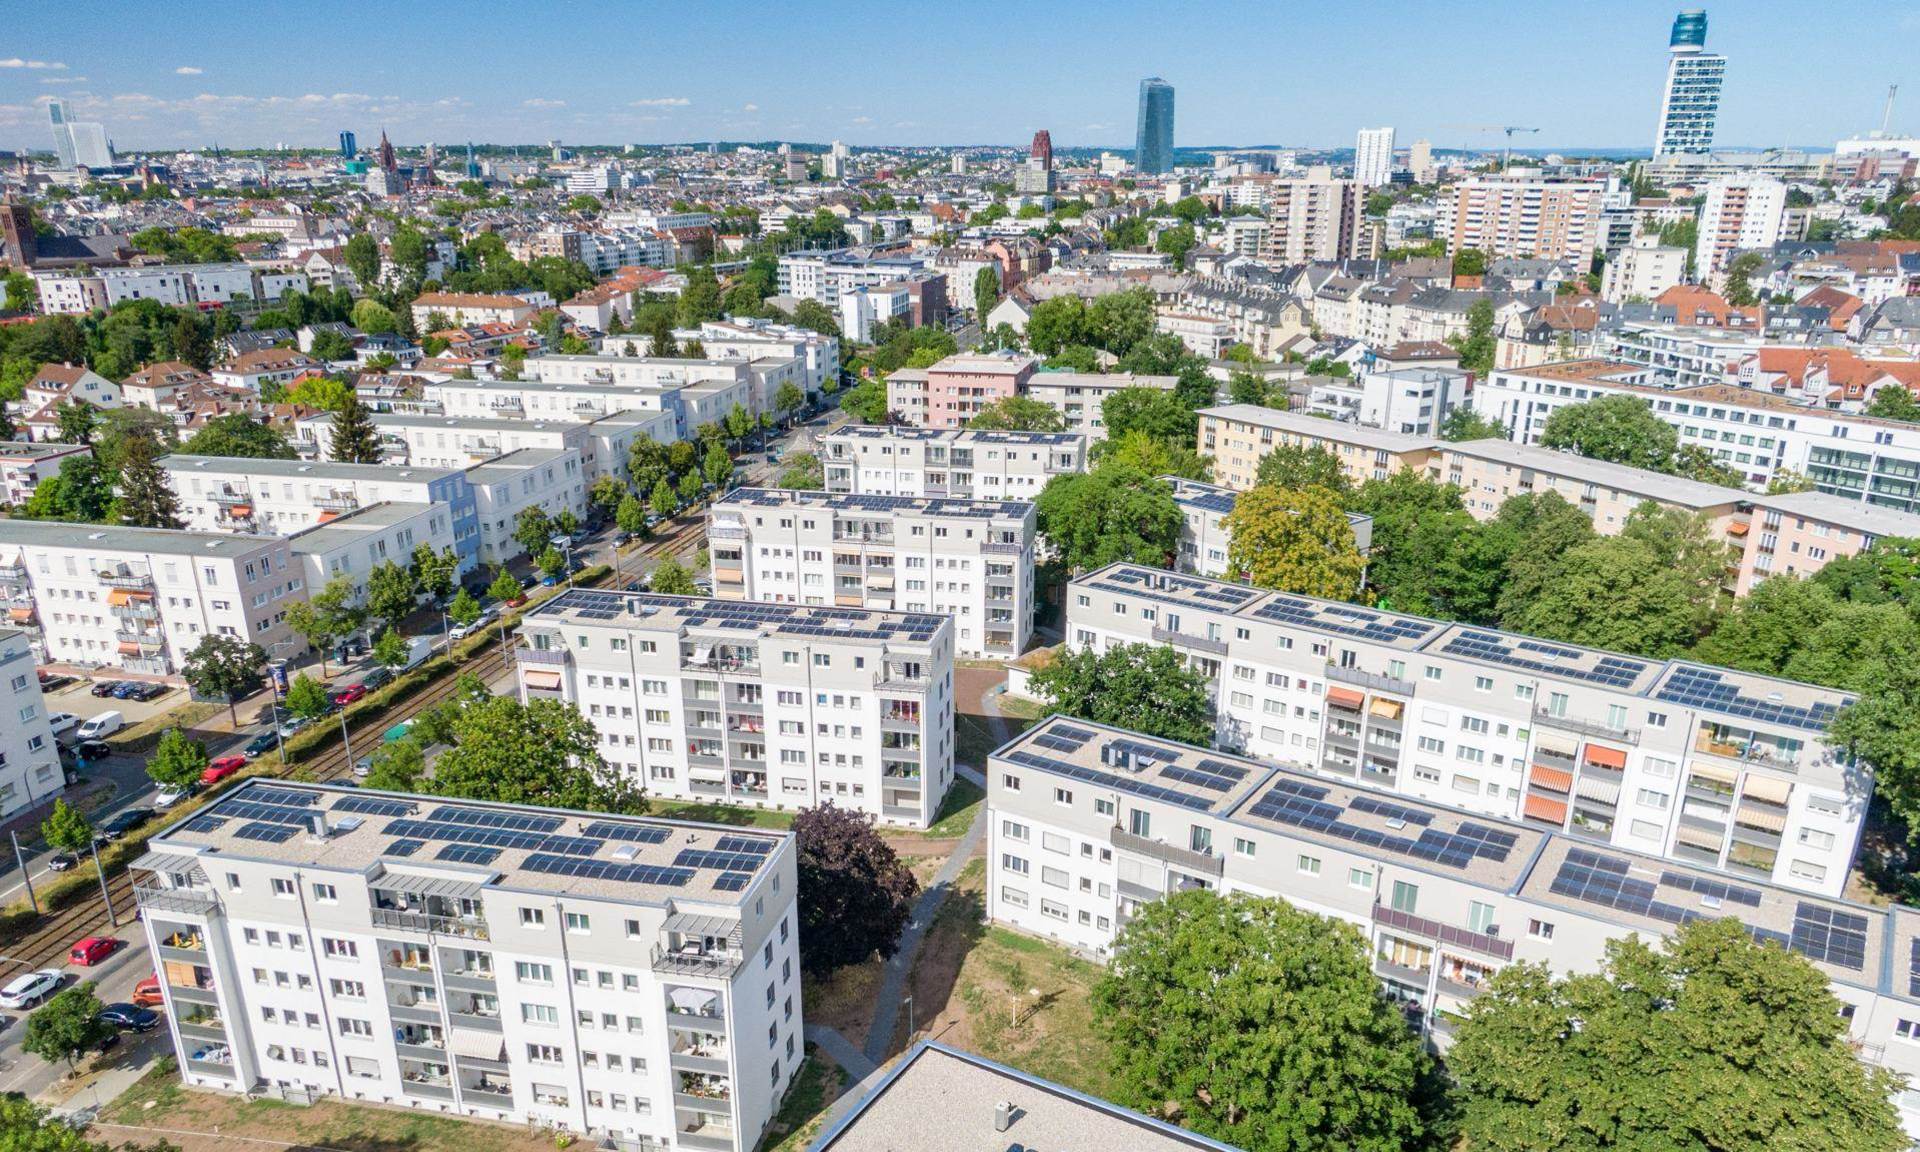 Luftbild der Fritz-Kissel-Siedlung in Frankfurt